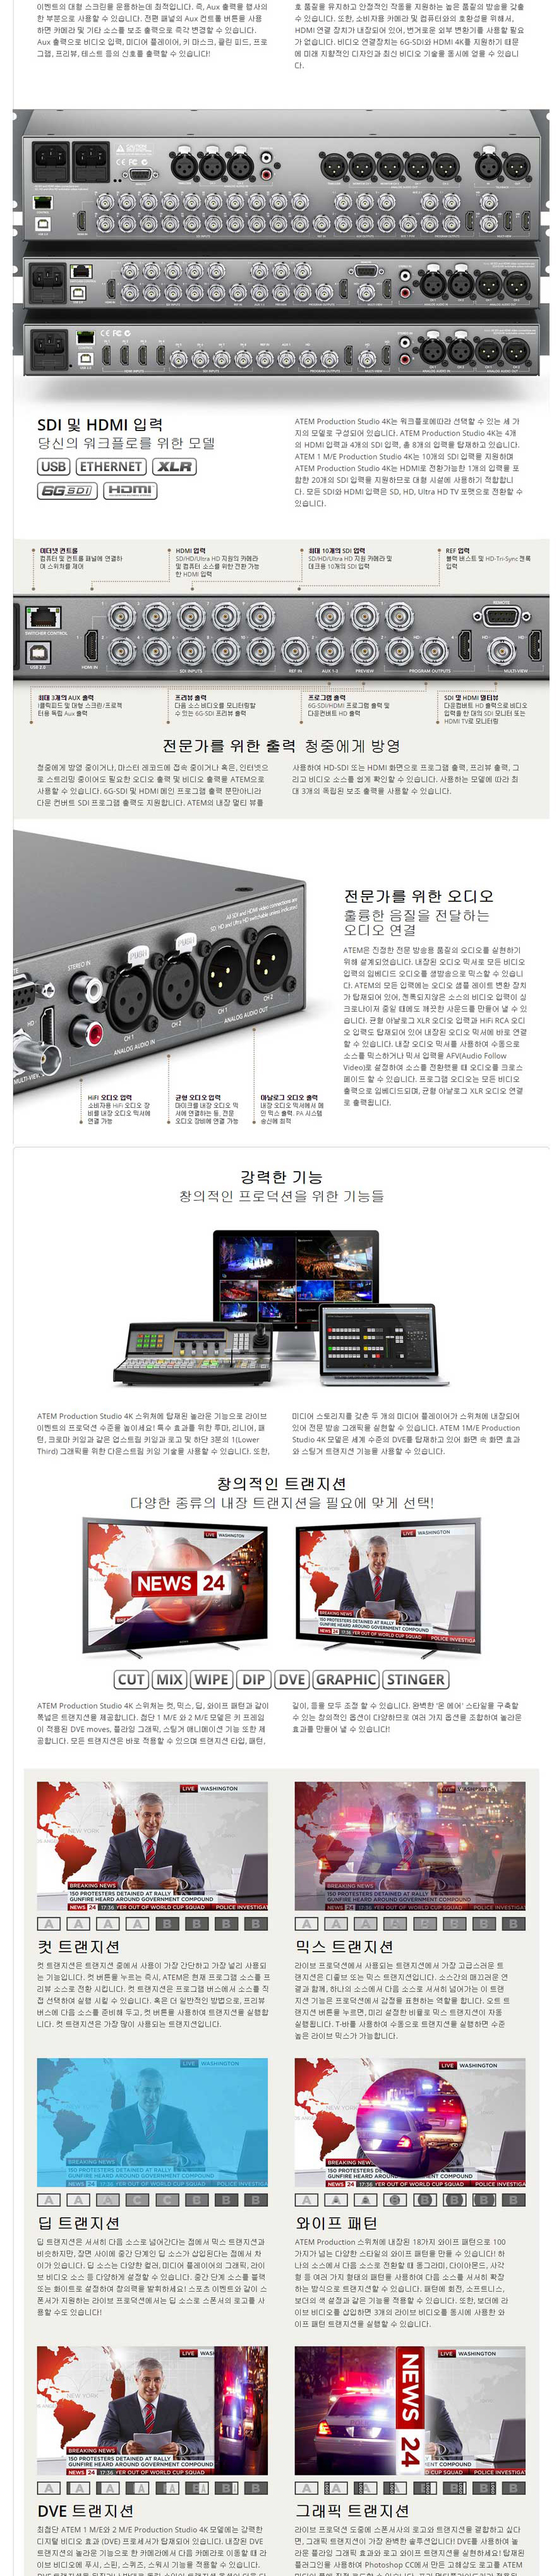 ATEM 2 M/E Broadcast Studio 4K